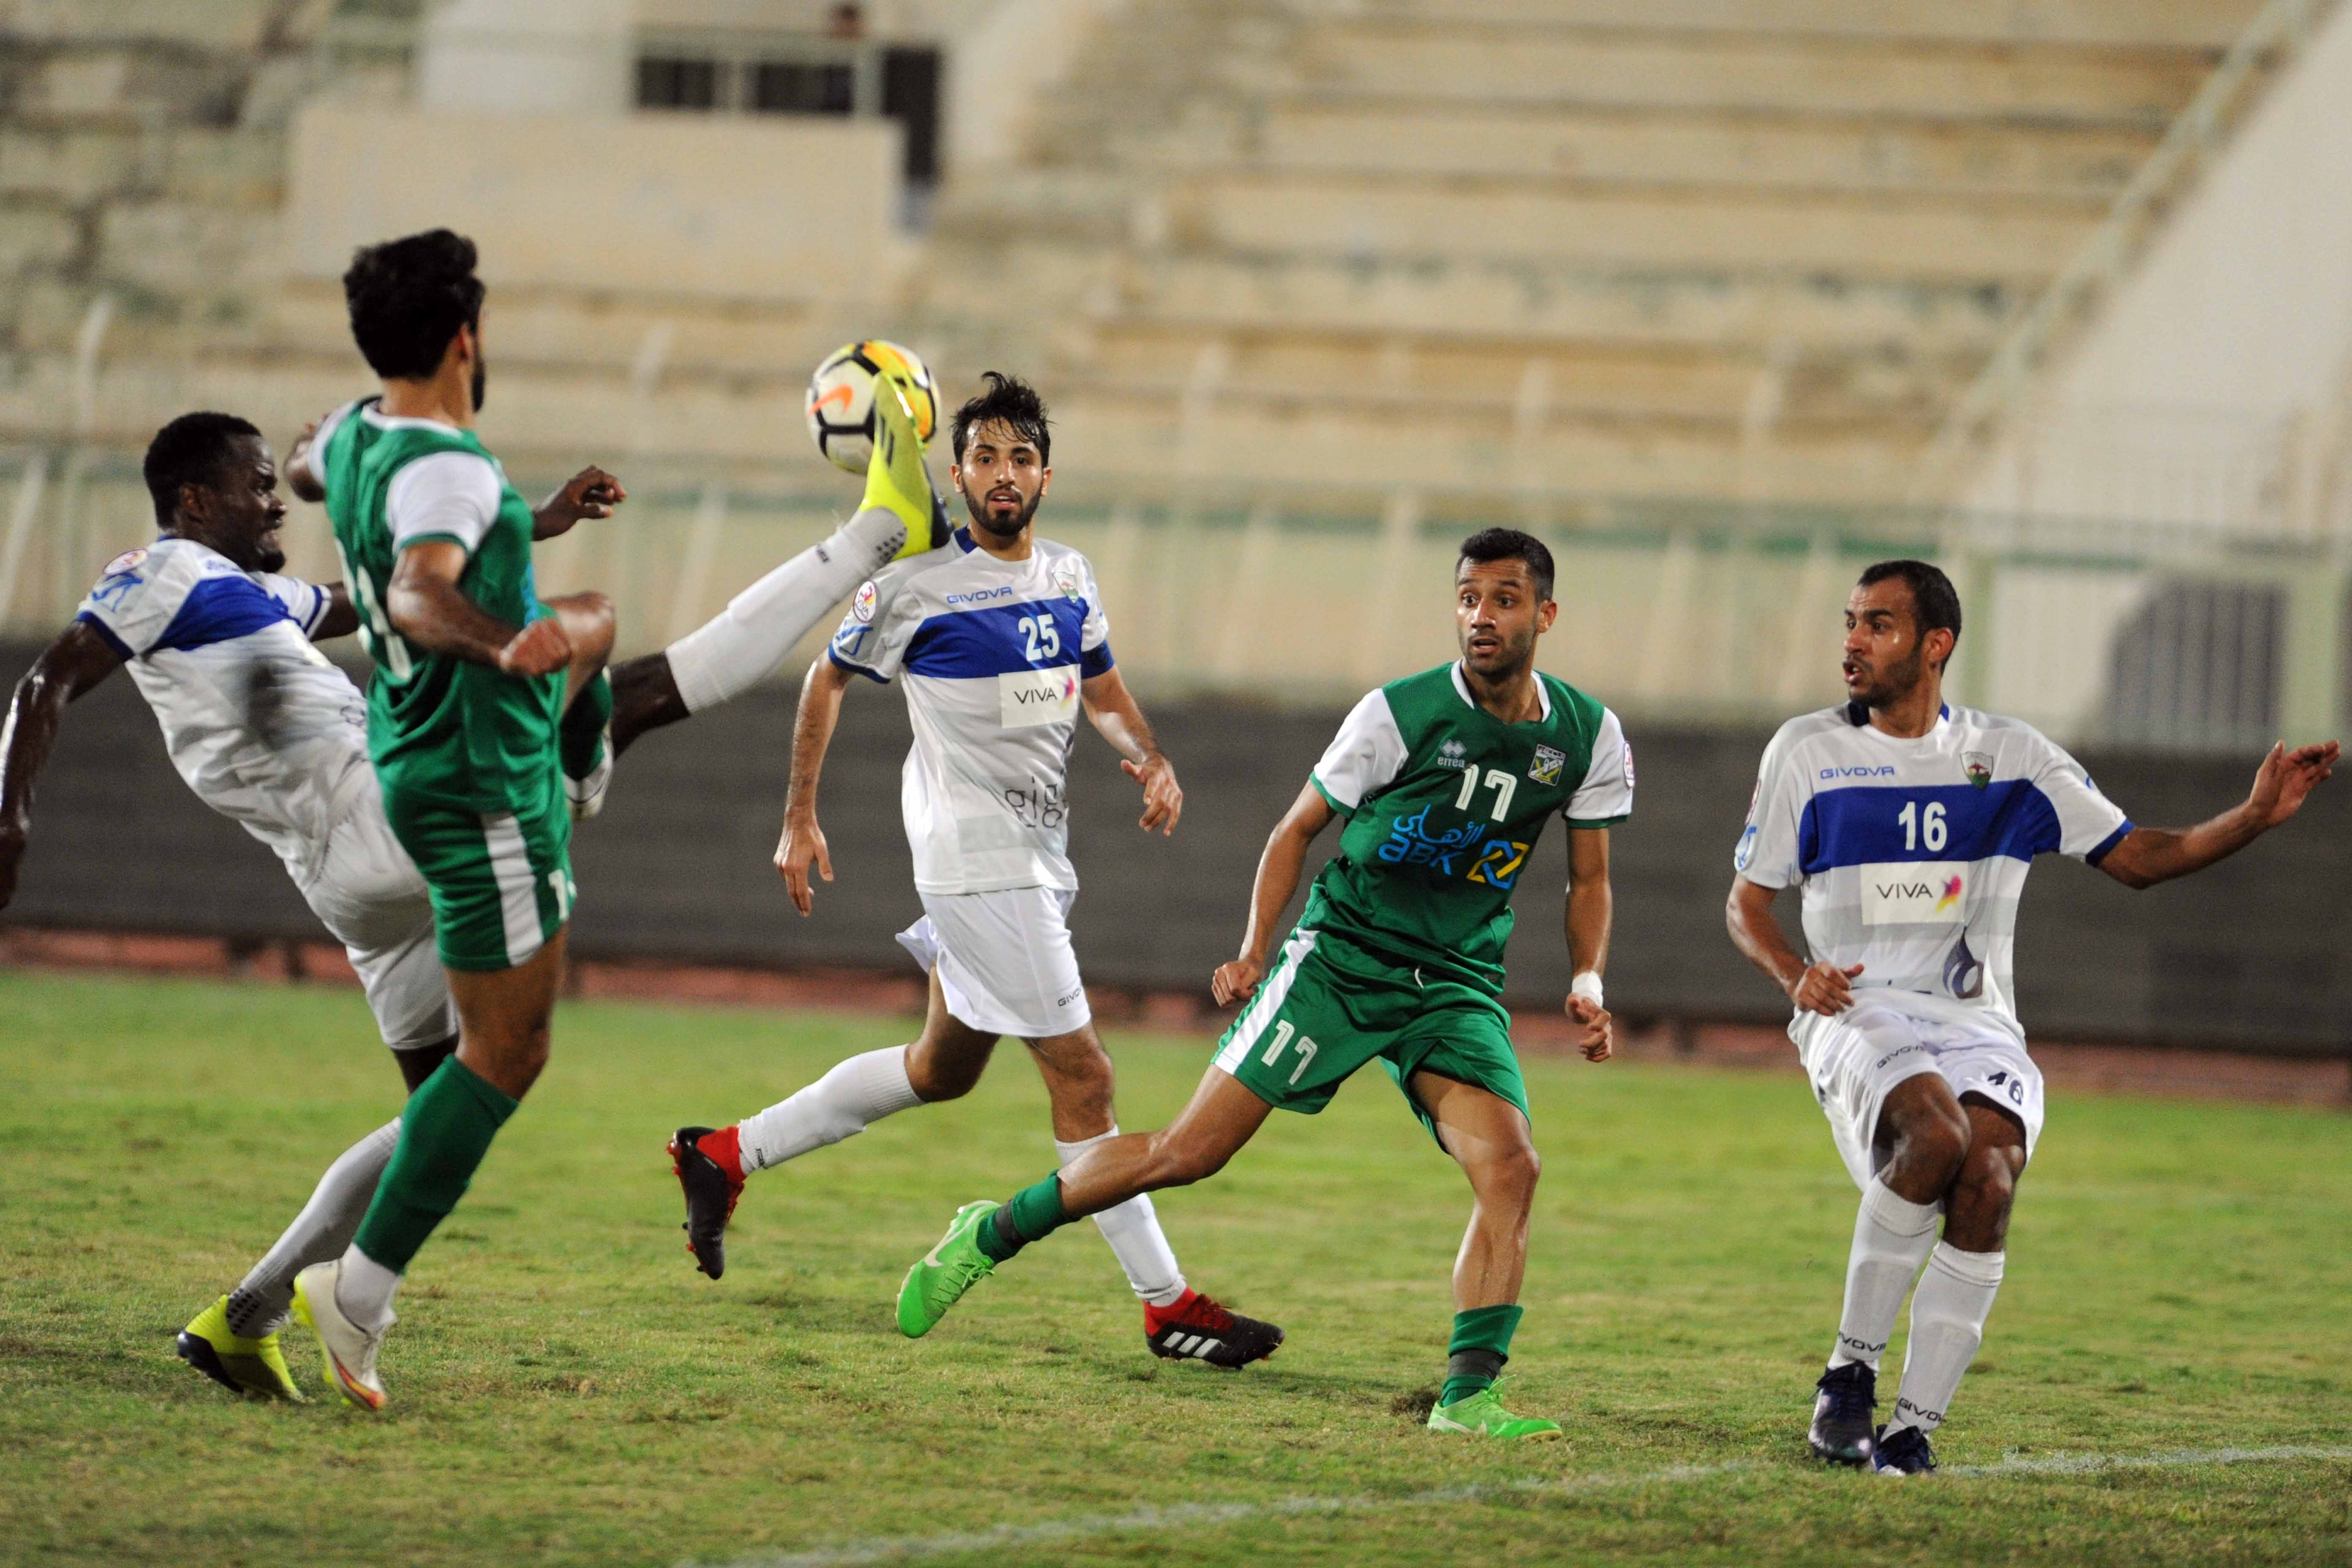 دفاع قوي من لاعب الجهراء وابعاد الكرة من امام لاعب العربي